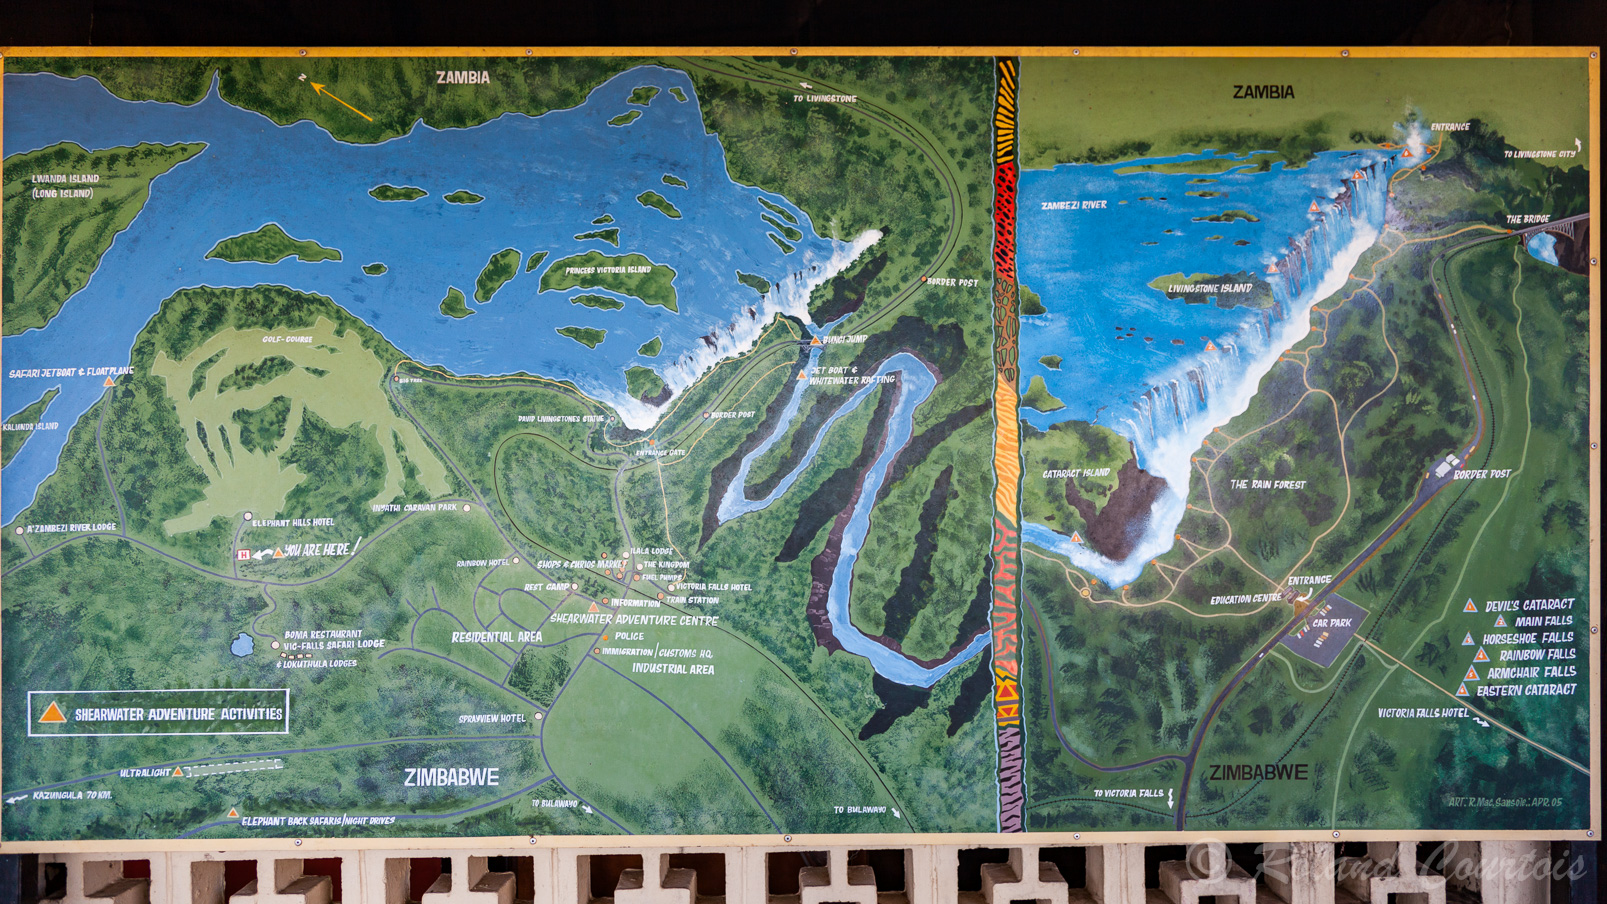 Les chutes Victoria:  cette carte montre bien la géographie de ces belles chutes.